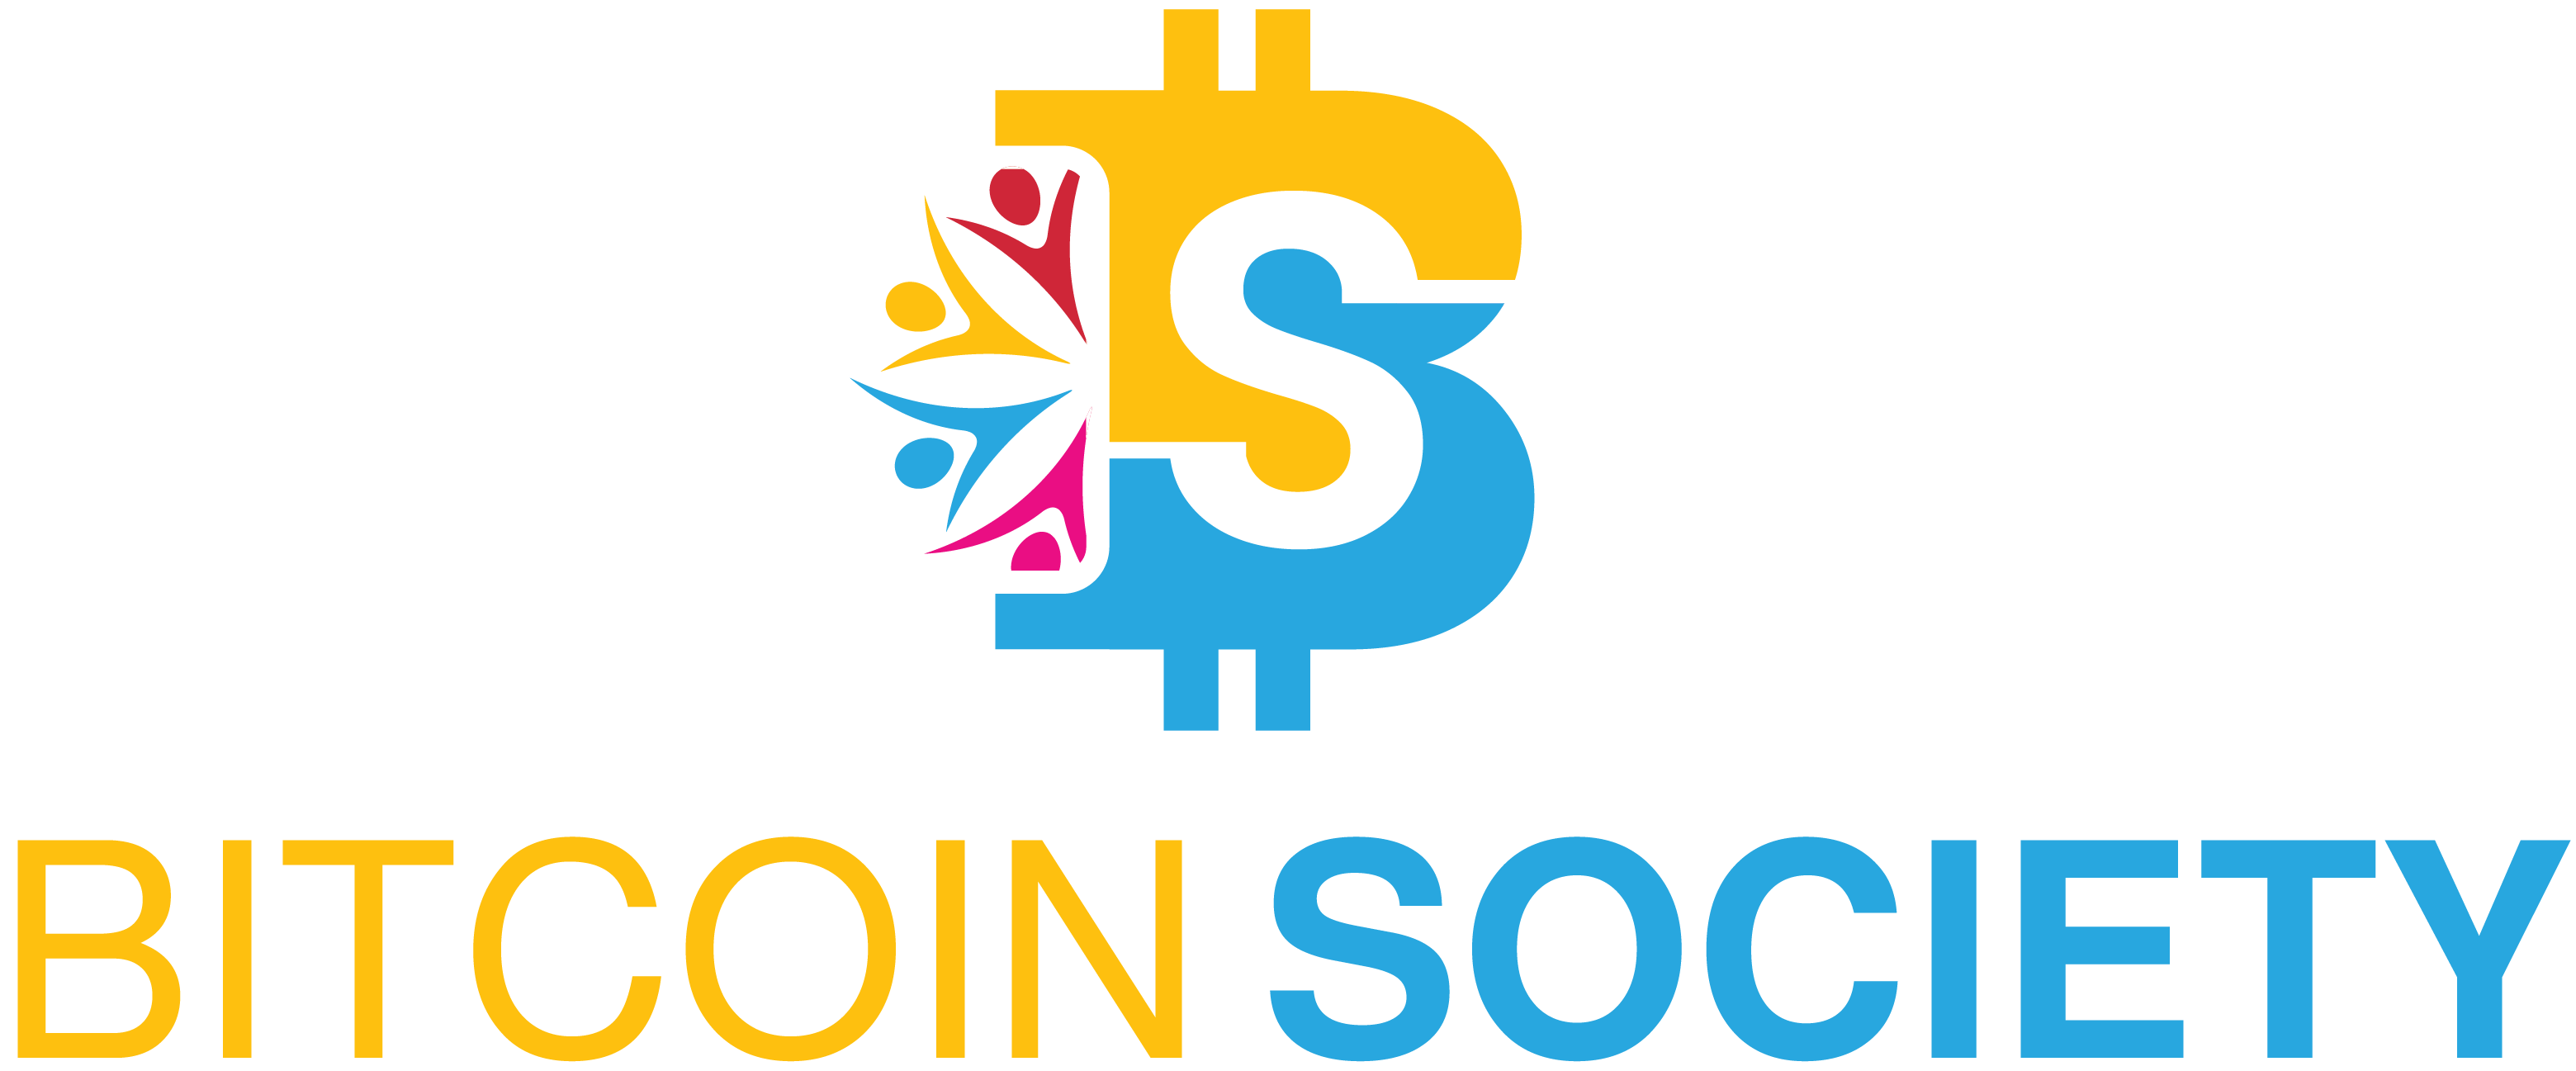 Bitcoin Society - El equipo Bitcoin Society